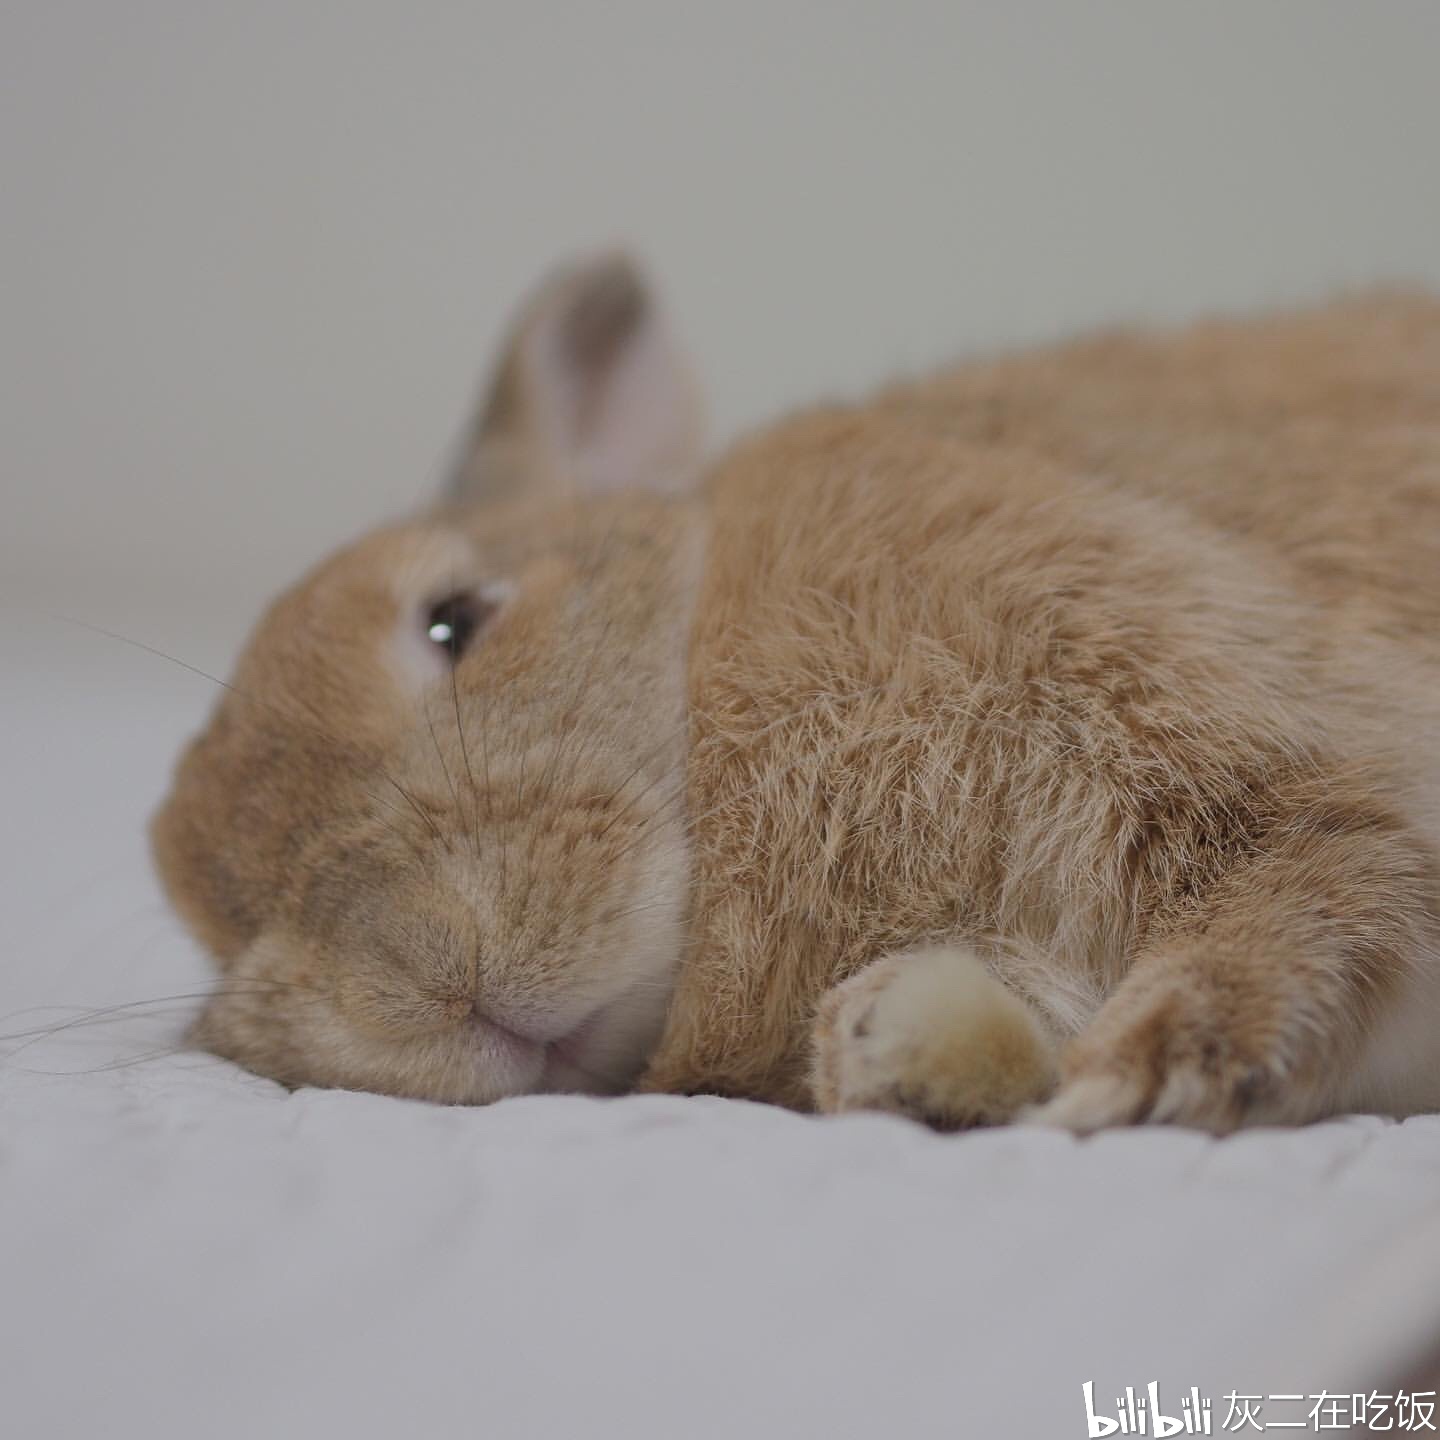 【养兔知识】兔兔会闭着眼睛睡觉吗?让你了解兔兔的睡眠行为!